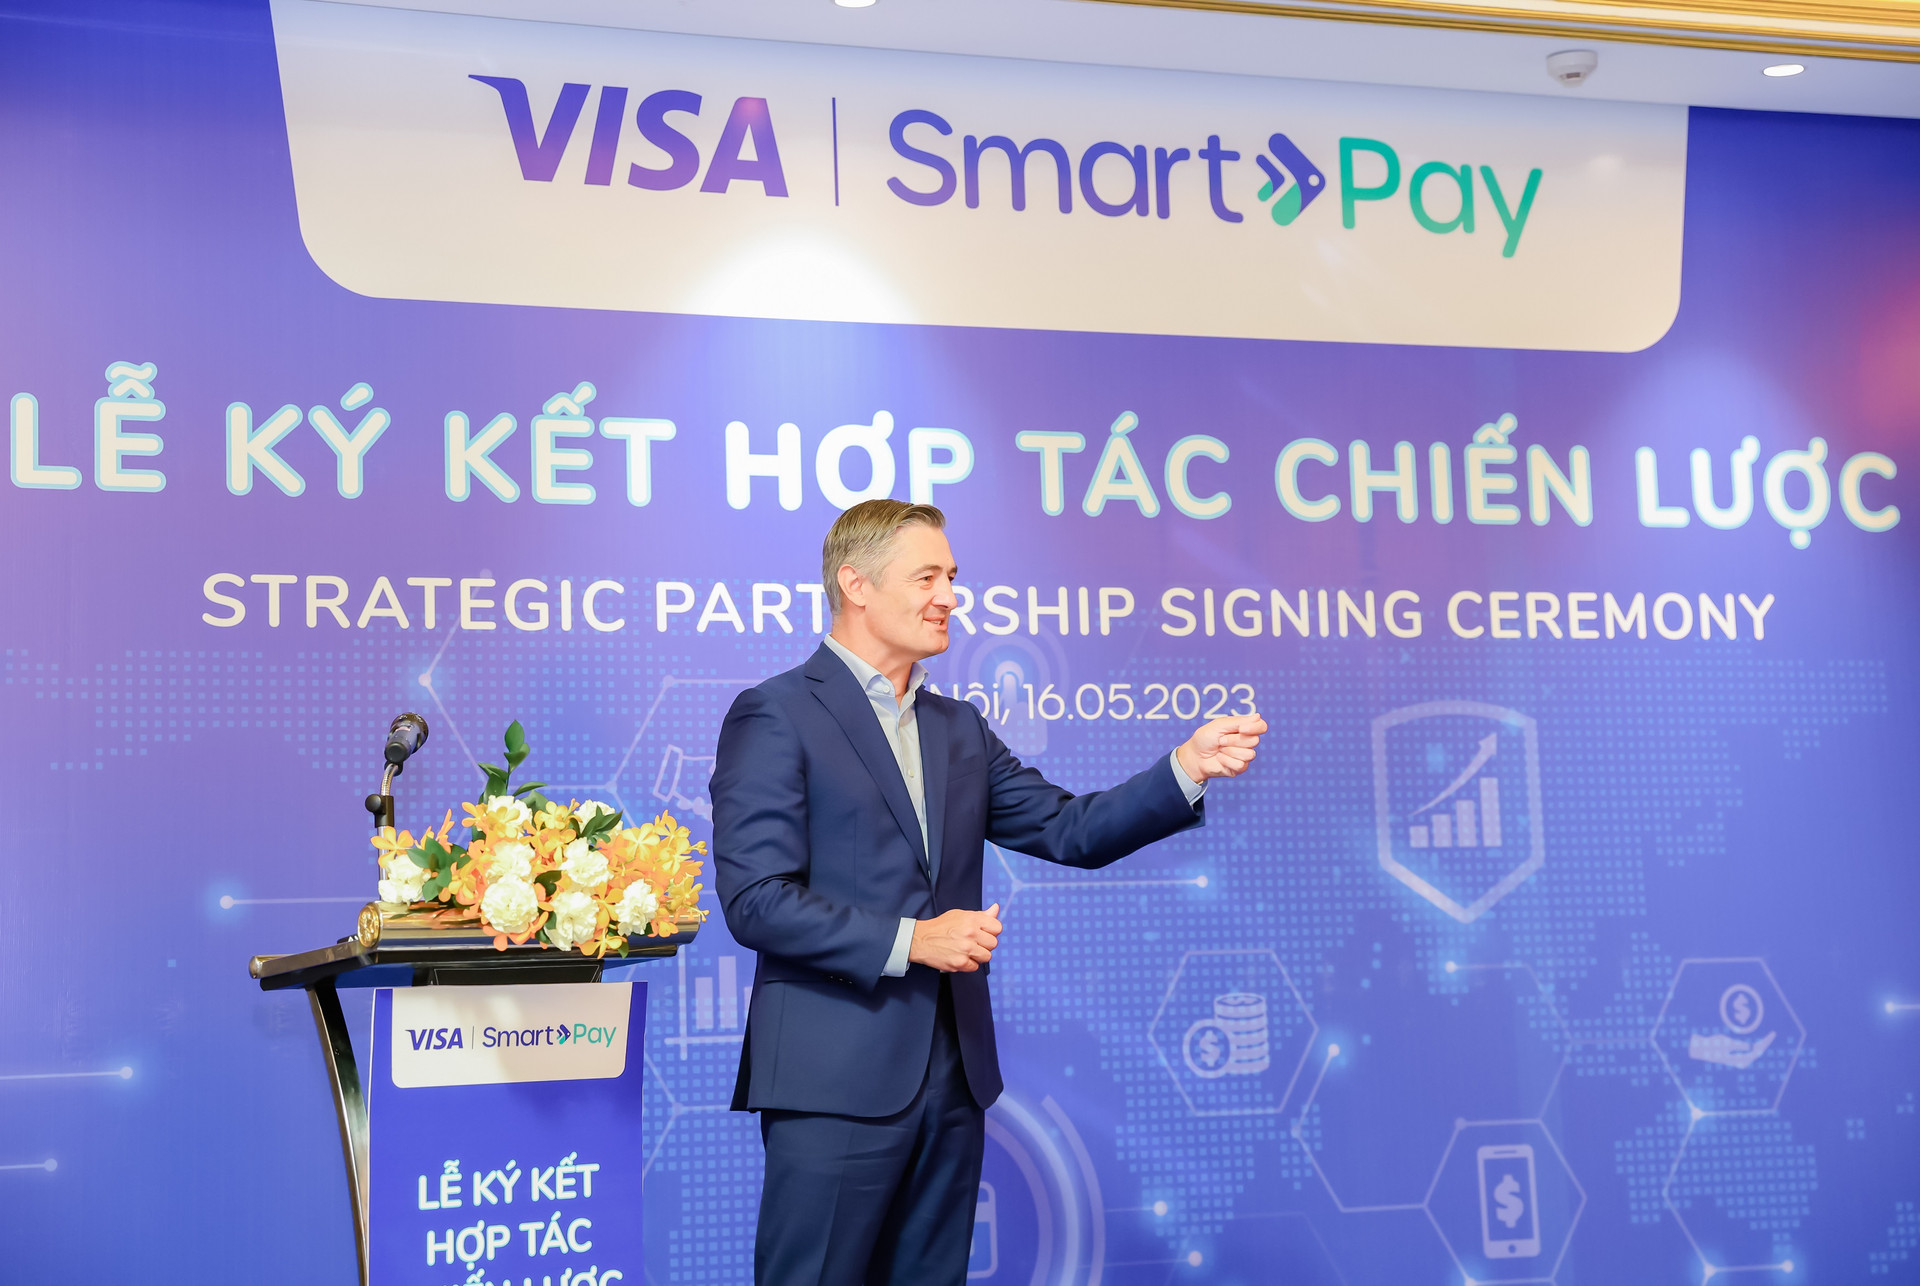 Tin vui cho các tiểu thương và SME Việt Nam: Visa bắt tay với doanh nghiệp fintech 40 triệu người dùng để hỗ trợ giải pháp thanh toán số - Ảnh 2.